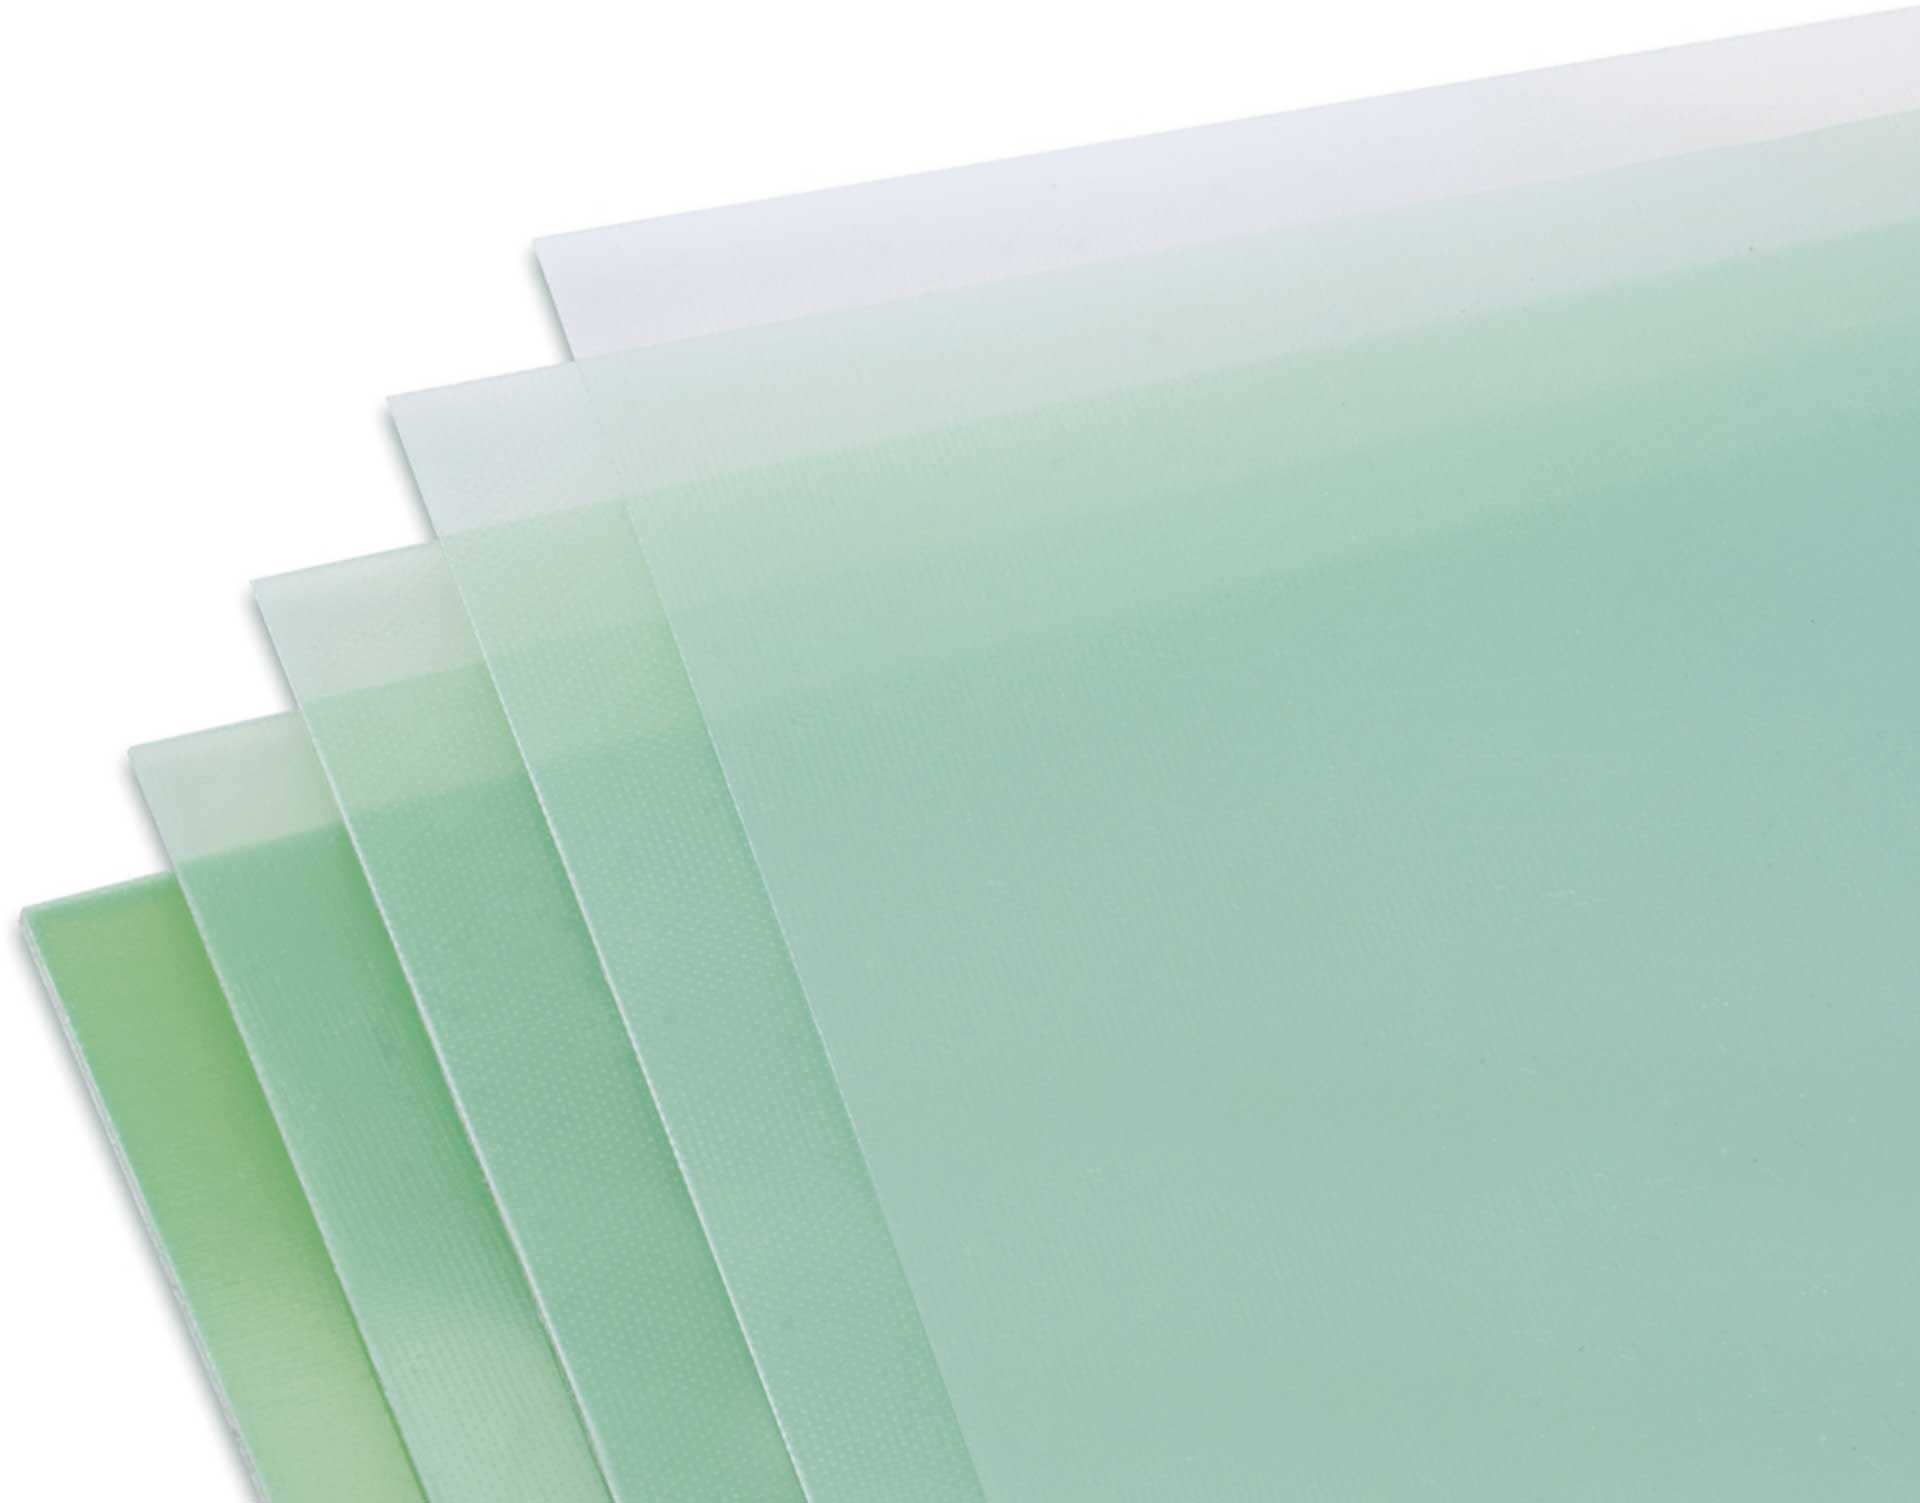 Modellbau Lindinger GFK-Platte 1,0x340x1220mm matt, grünlich transparent